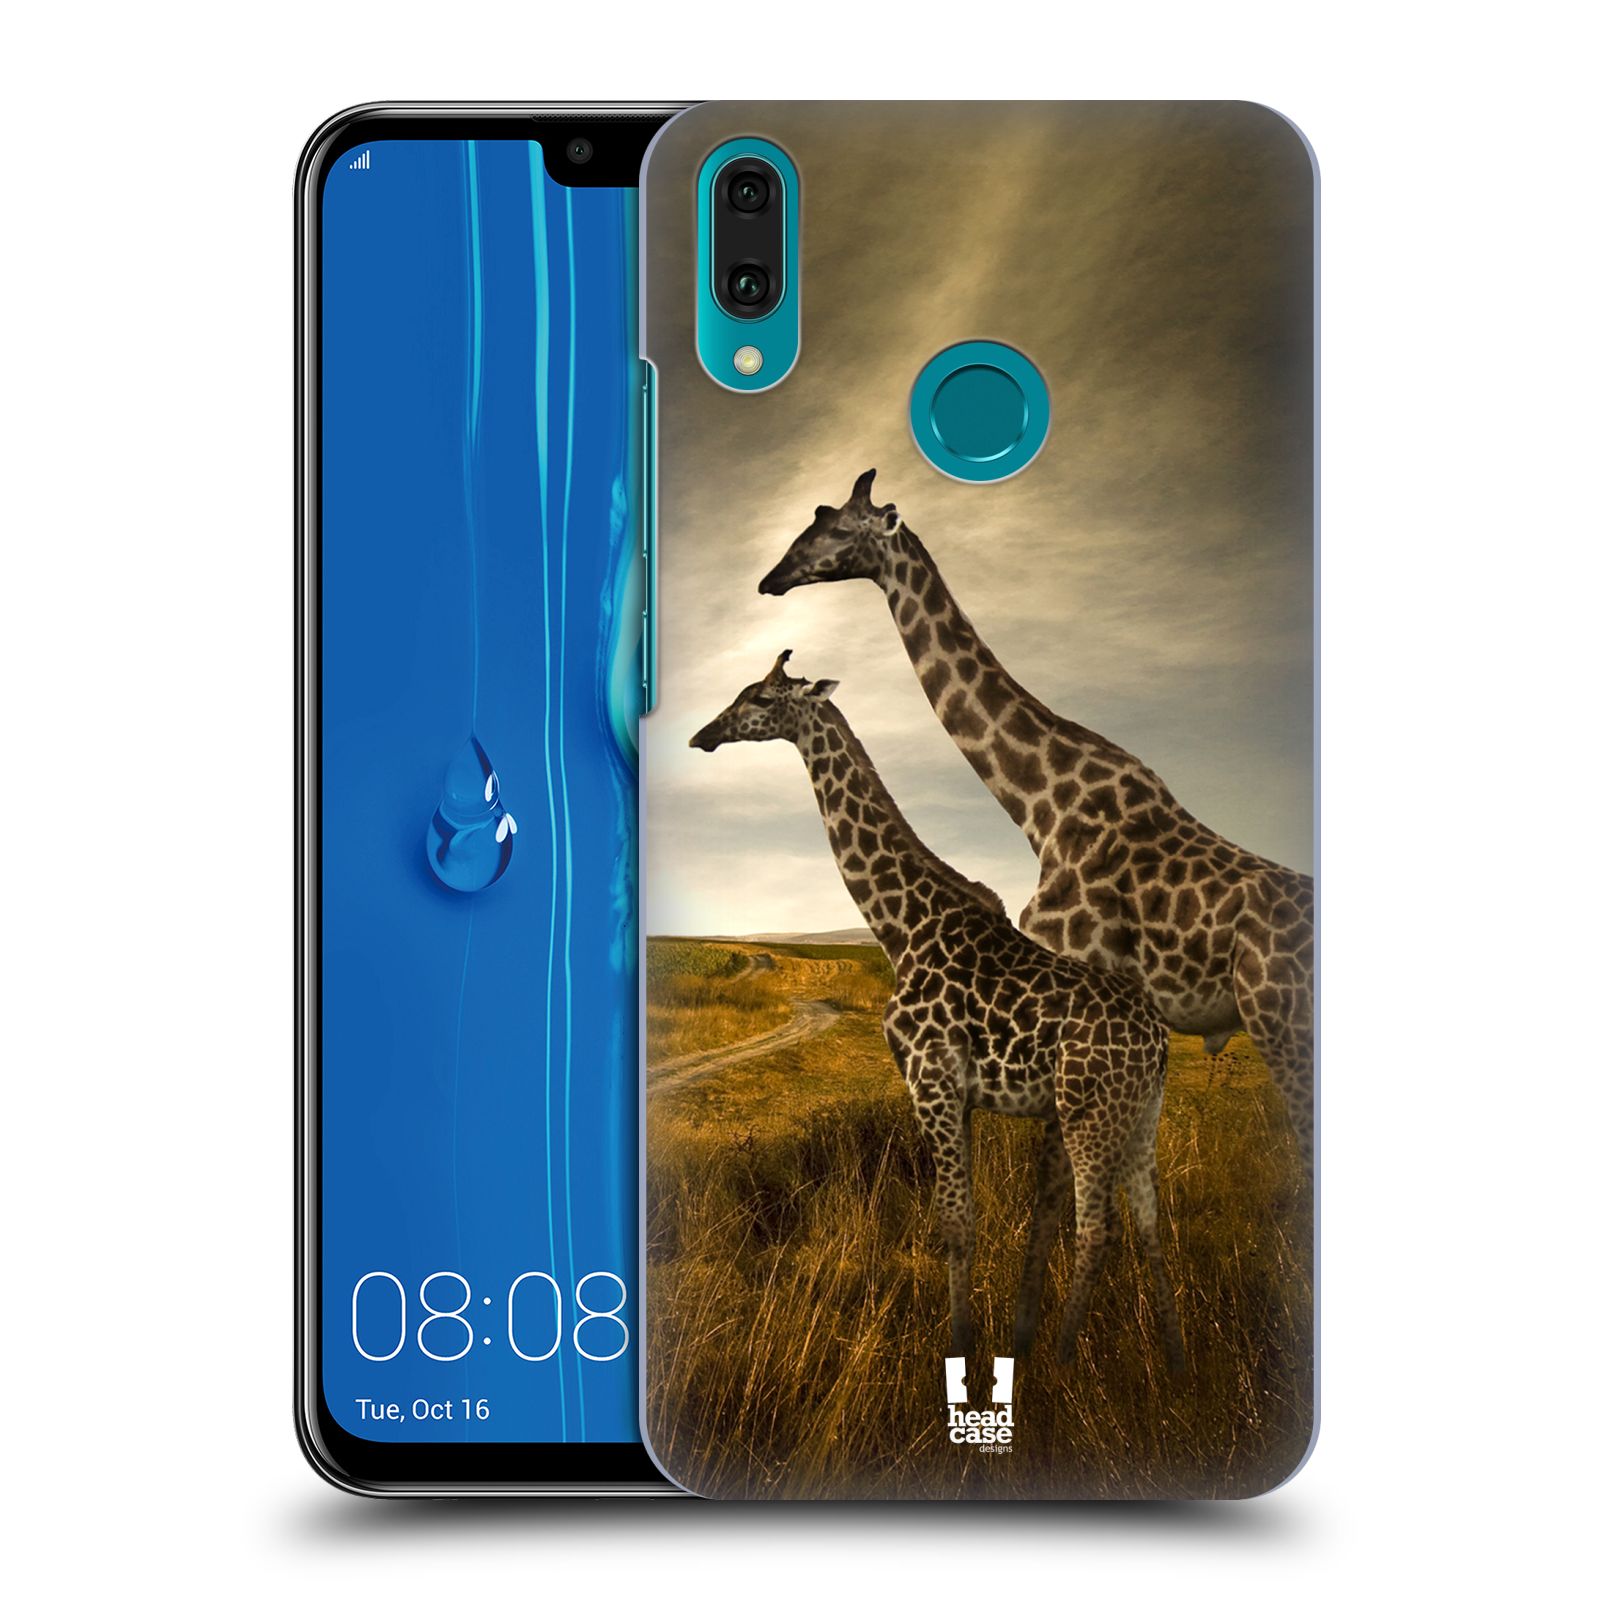 Pouzdro na mobil Huawei Y9 2019 - HEAD CASE - vzor Divočina, Divoký život a zvířata foto AFRIKA ŽIRAFY VÝHLED